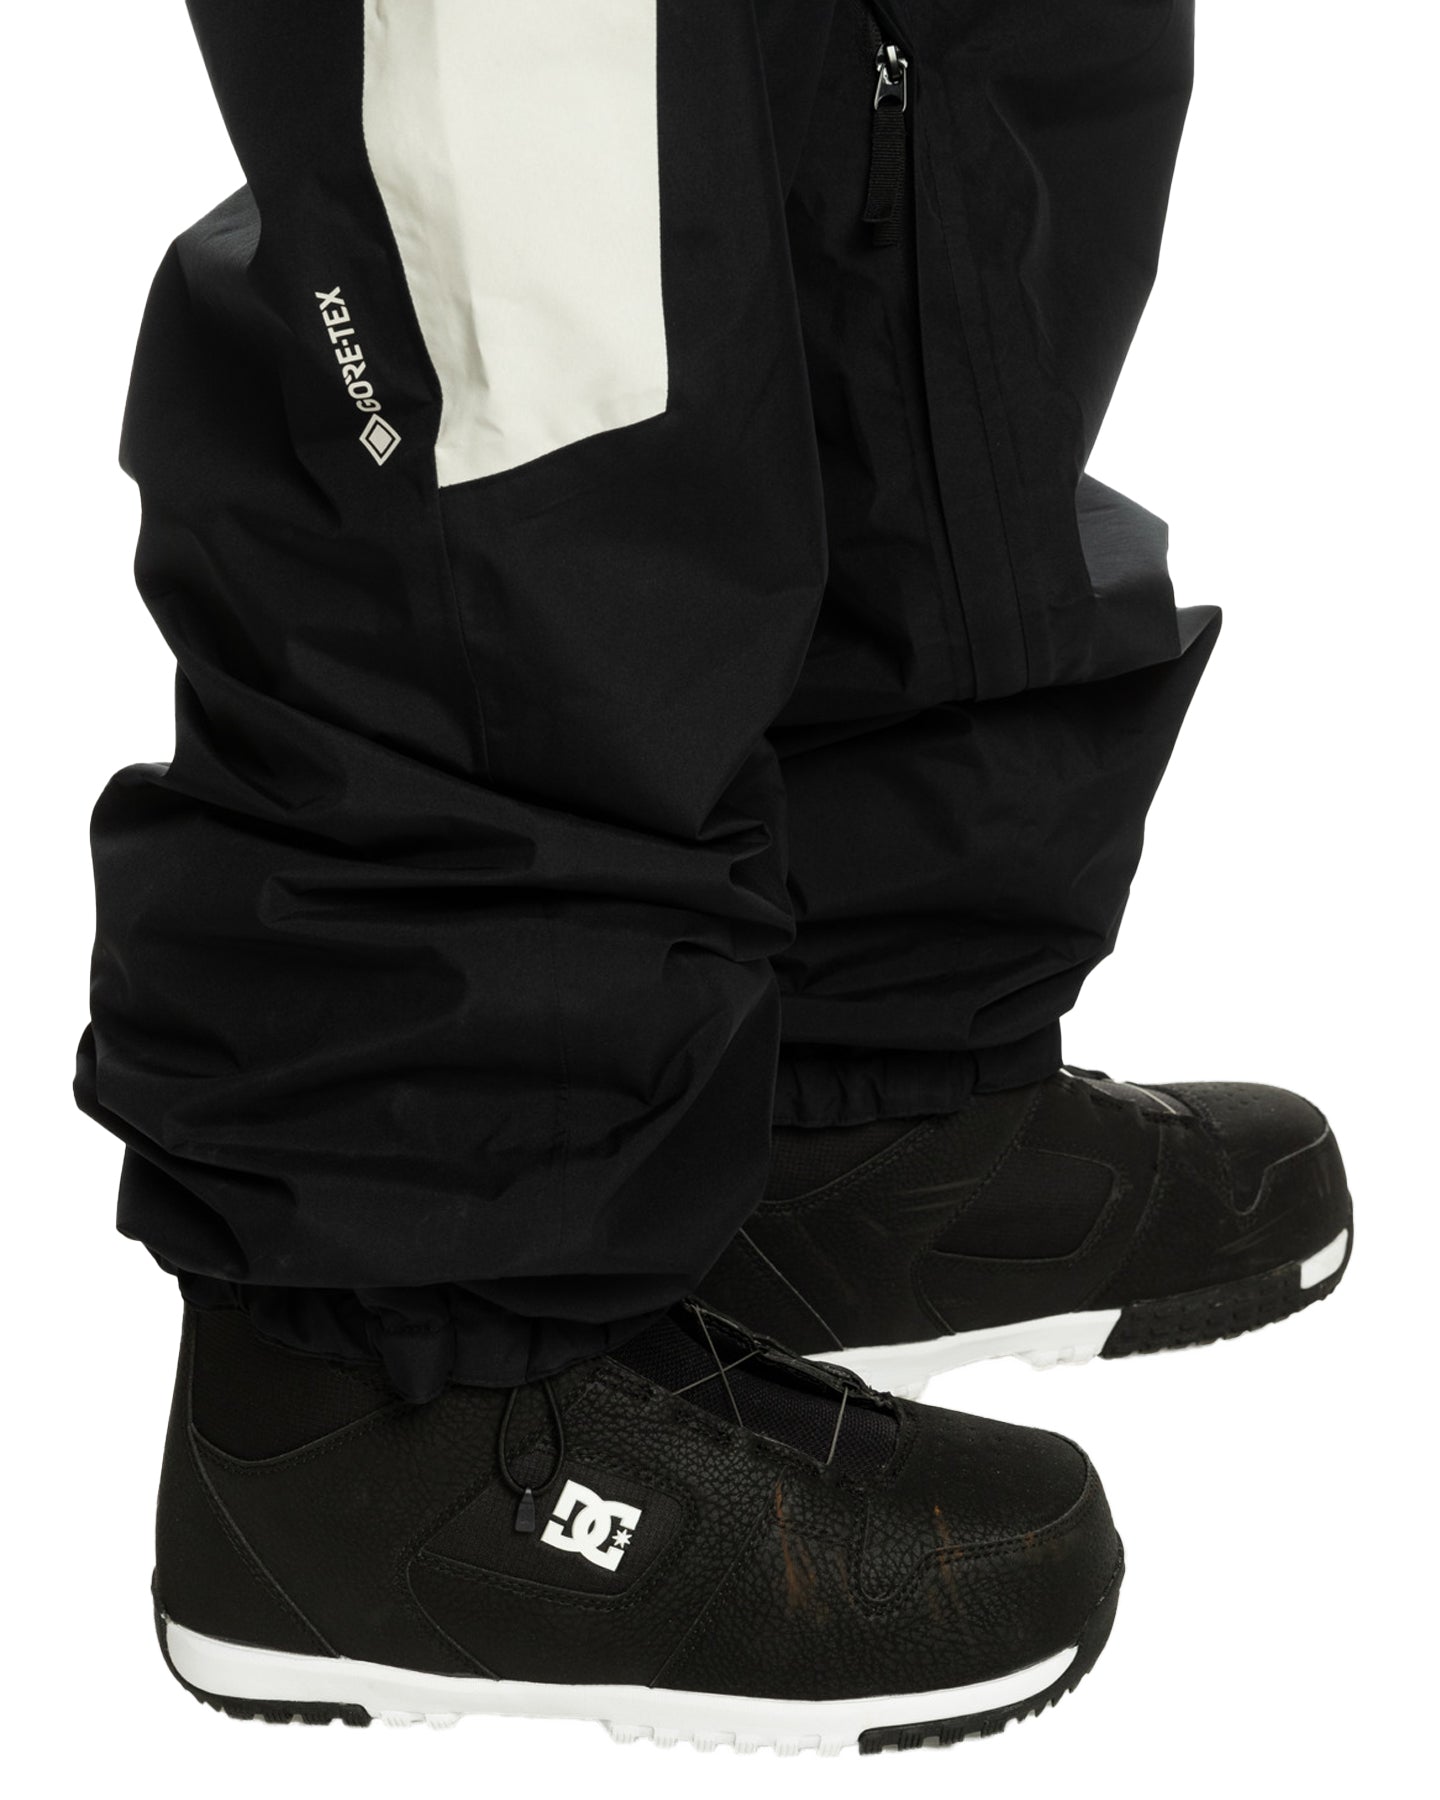 Quiksilver Men's High Altitude Gore-Tex® Technical Snow Pants - True Black Men's Snow Pants - SnowSkiersWarehouse